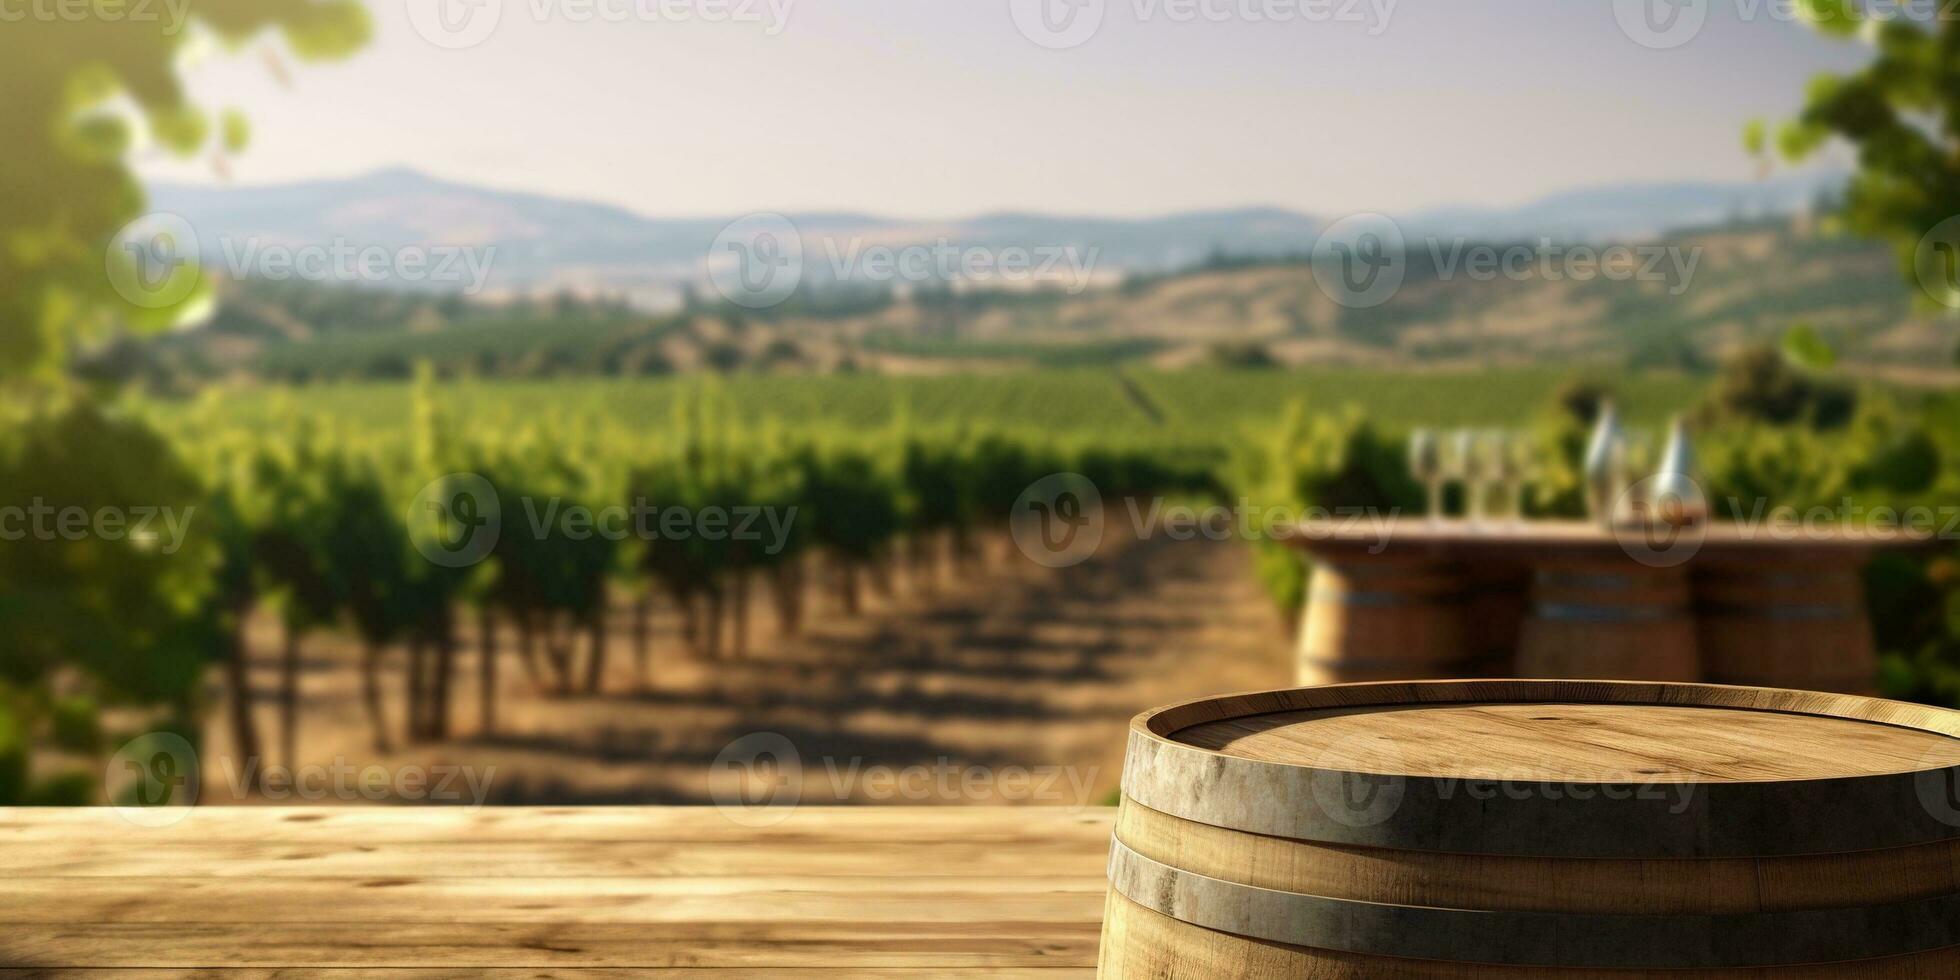 generativ ai, skön vingård, grön landskap. rader av vinstockar på solnedgång foto